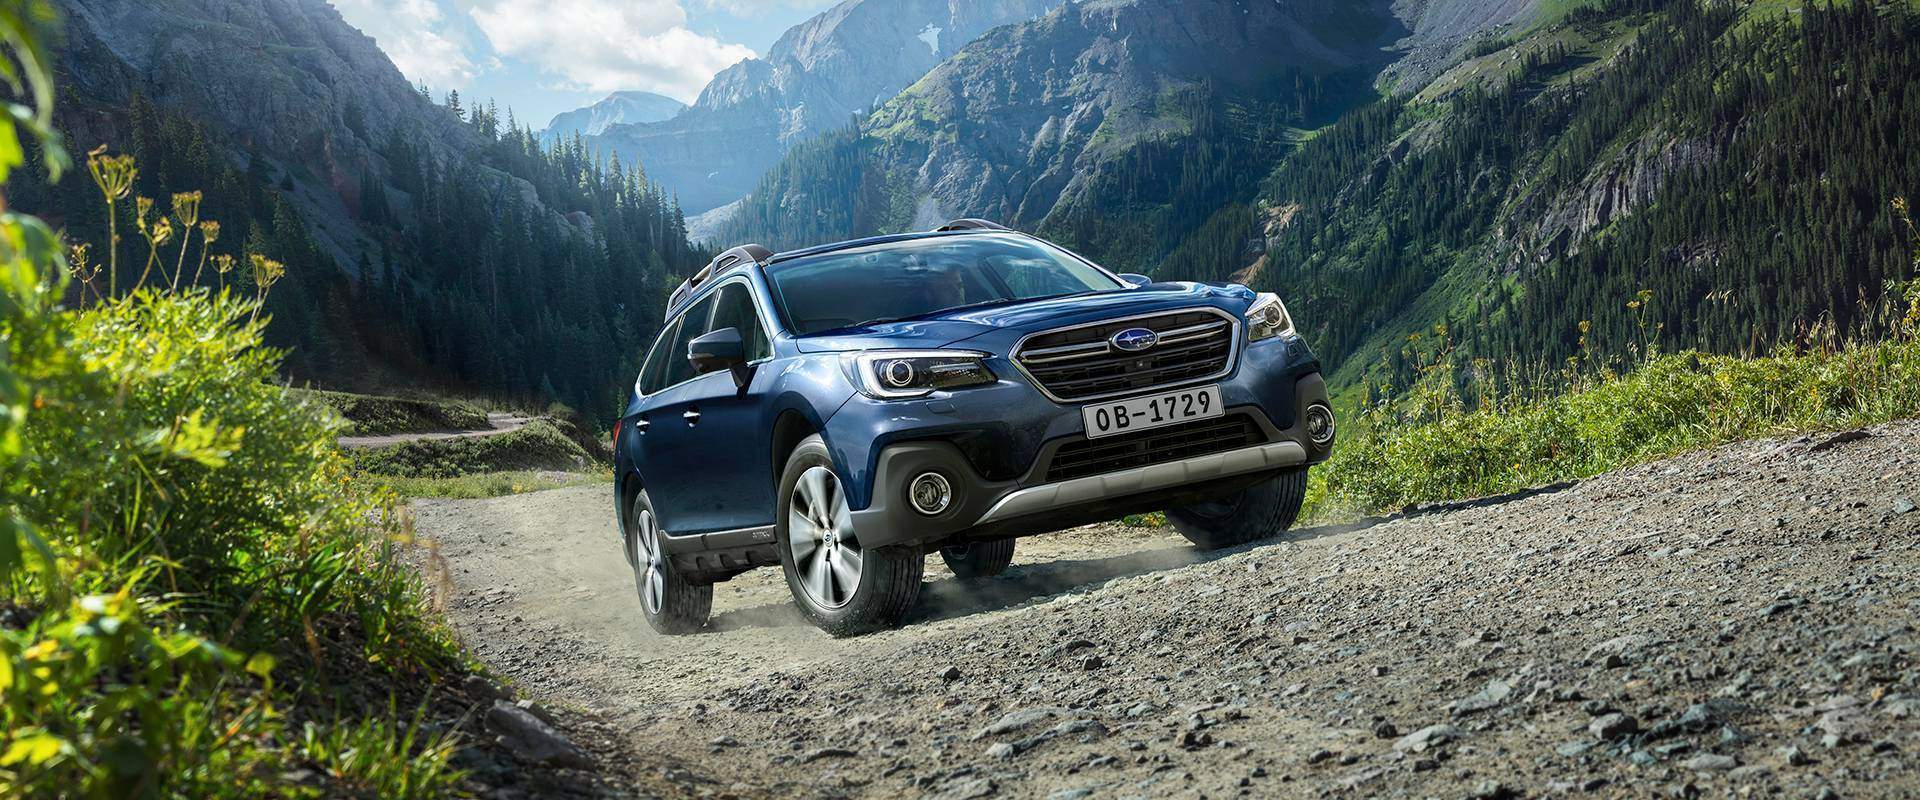 Subaru Outback характеристики и цены фото и обзор | Официальный сайт Subaru